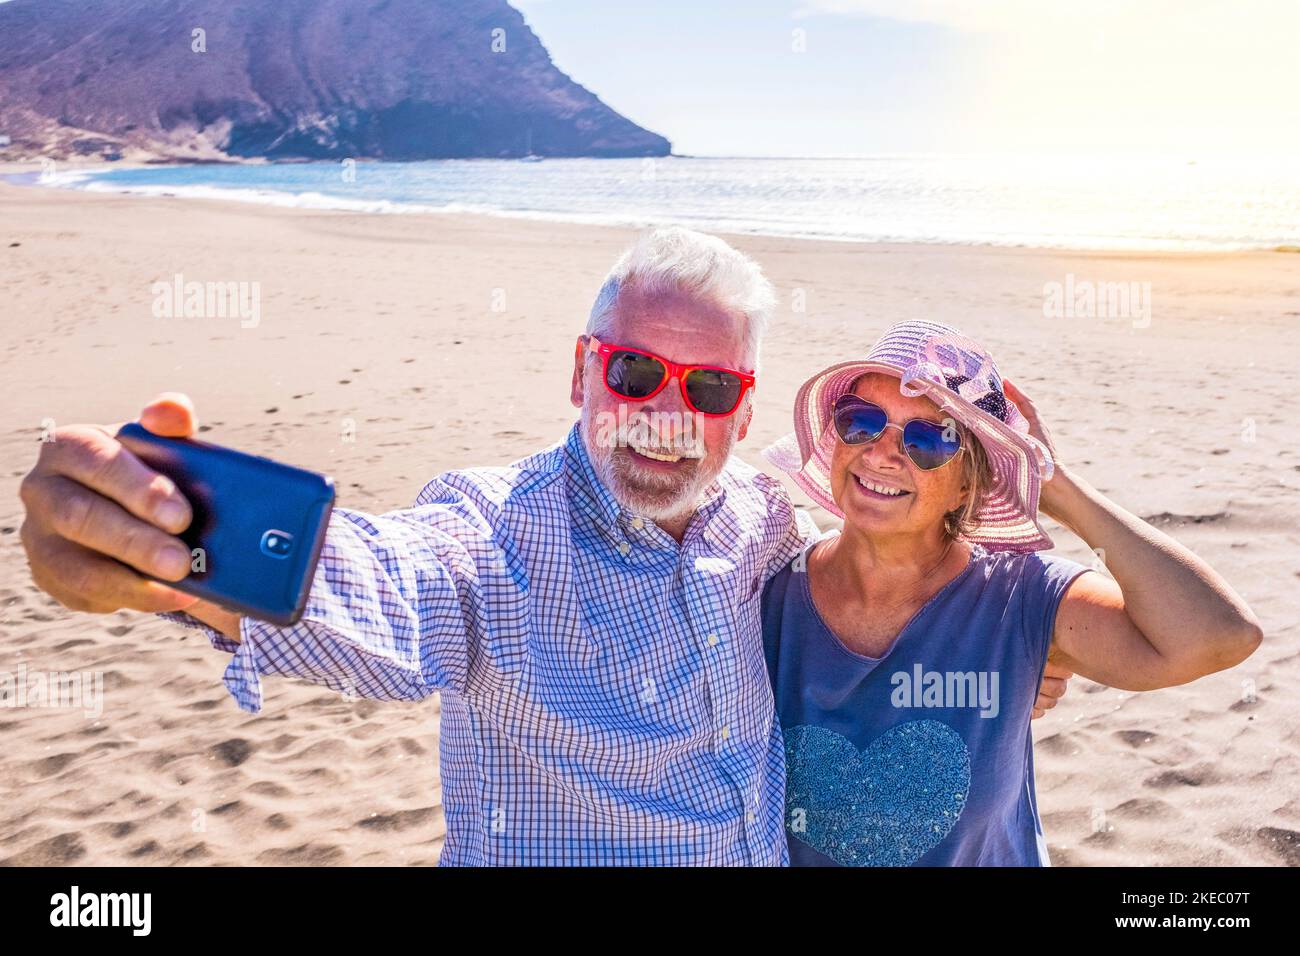 coppia di persone mature o pensionati che si godono le loro vacanze e il tempo estivo insieme sulla sabbia della spiaggia con il mare o l'oceano sullo sfondo - due anziani pensionati prendere un selfie guardando il telefono Foto Stock